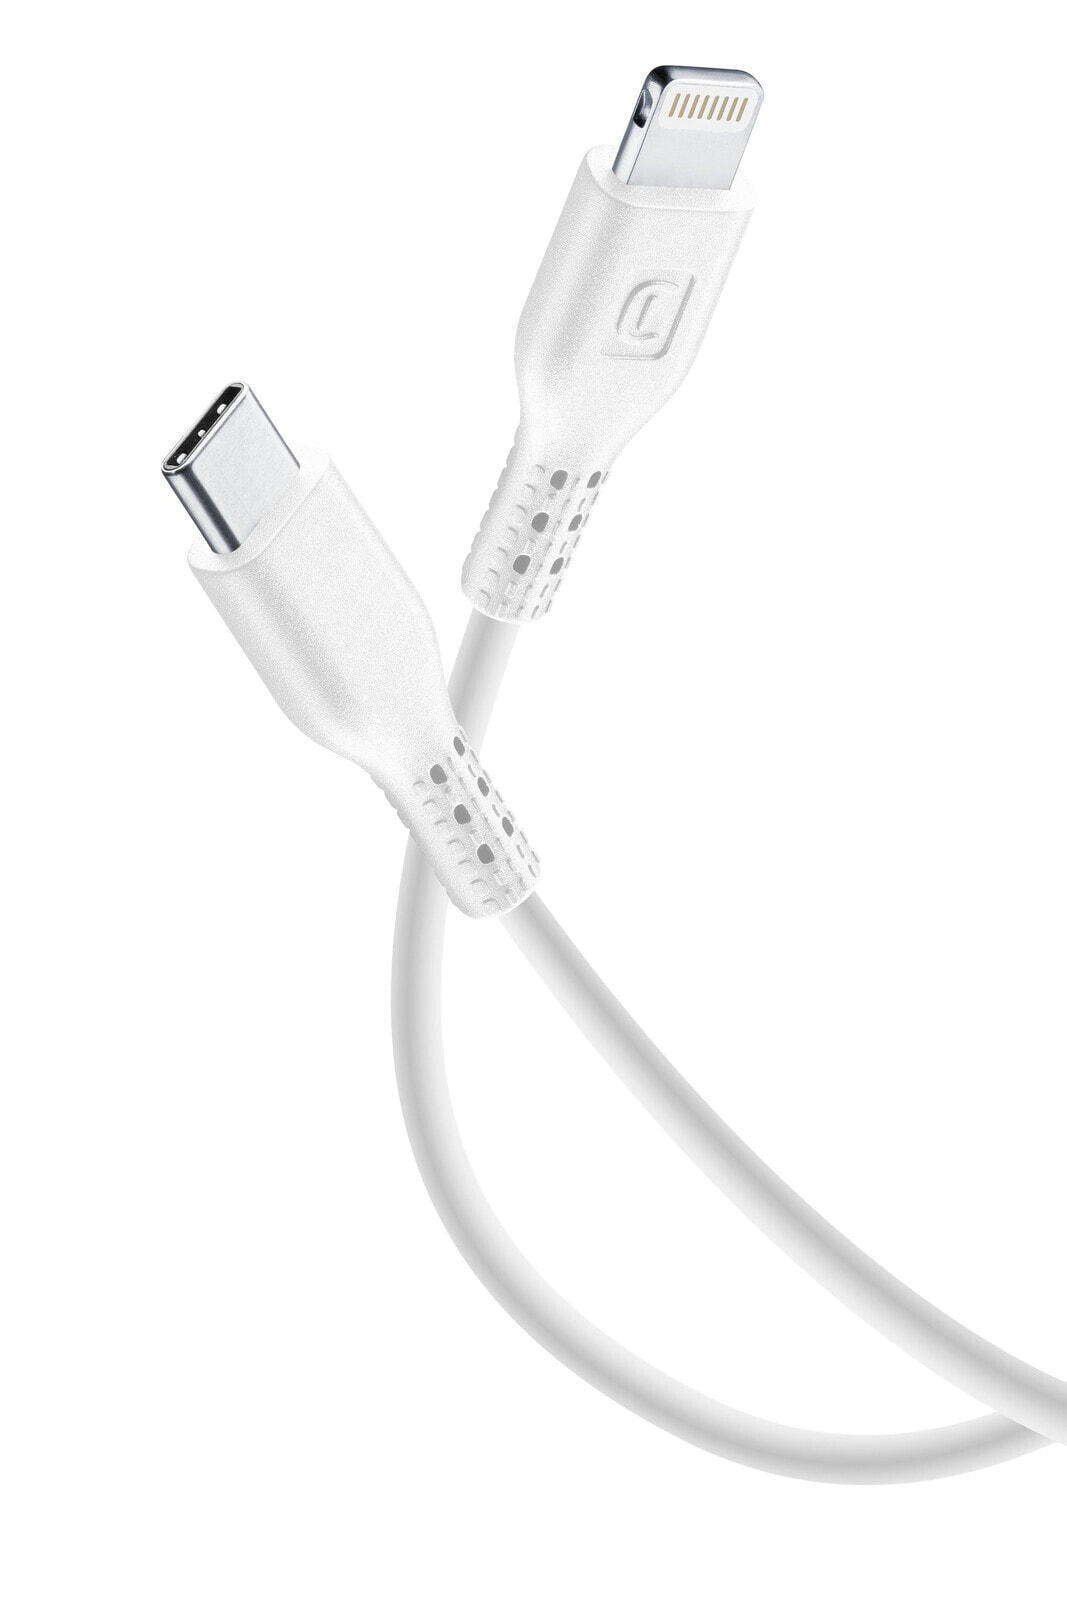 Cellularline USBDATAC2LMFI1MW кабель с разъемами Lightning 1,2 m Белый